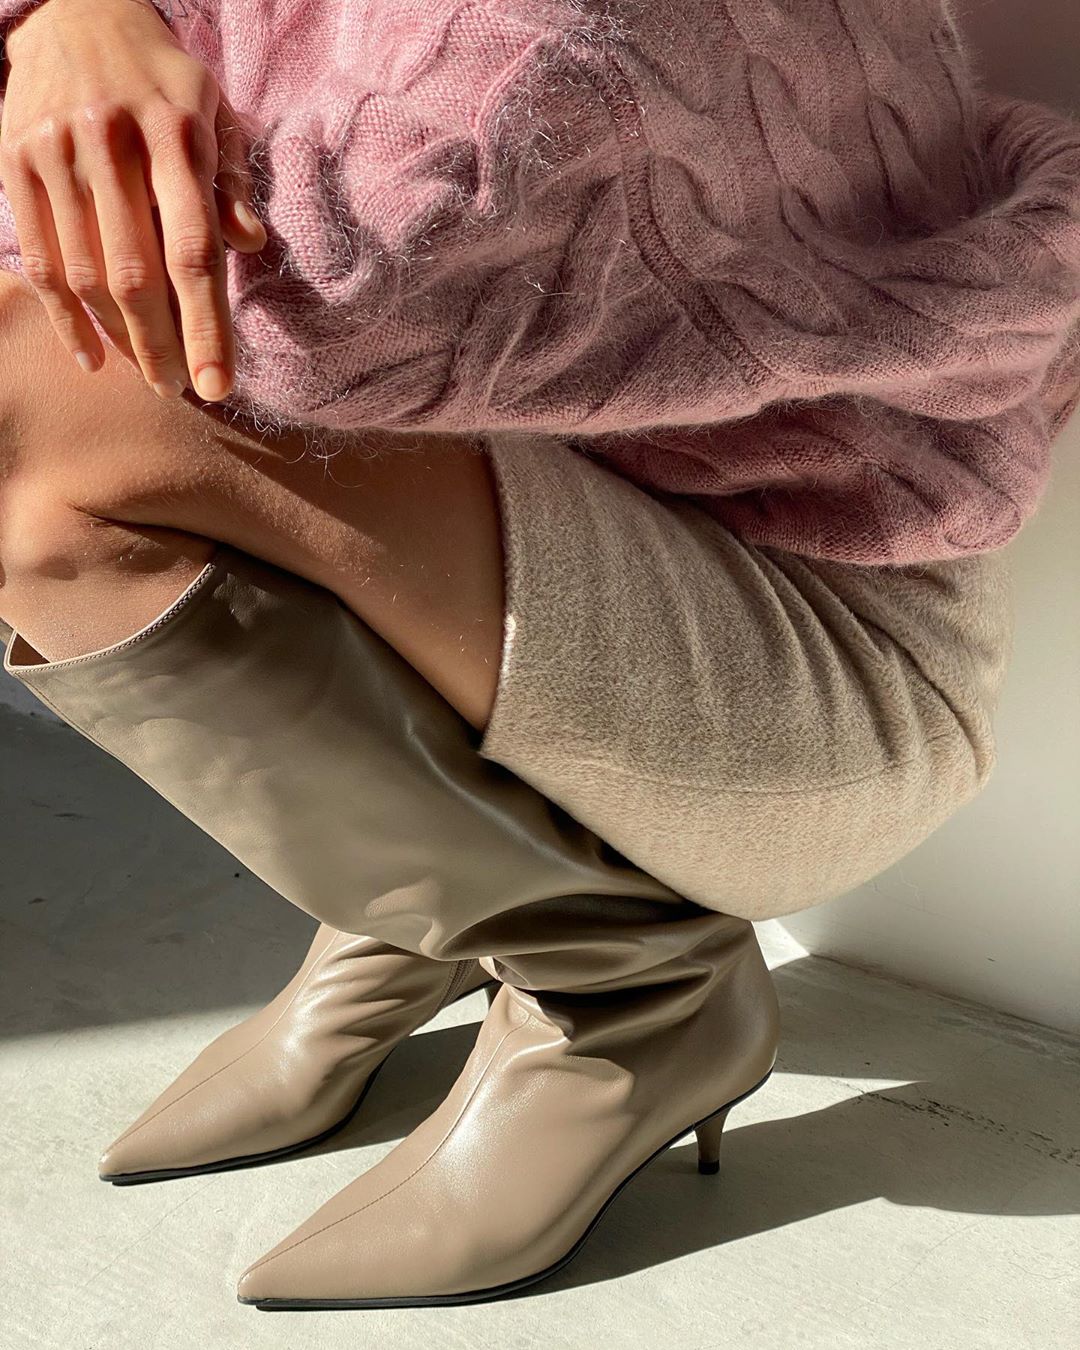 2MOOD - Shoes time 🤍
Высокие сапоги на маленьком каблуке, ботинки, казаки и базовые туфли — все позиции обуви из коллекции «Autumn colors» представлены на сайте 2moodstore.com в разделе «Обувь» 🤞🏻
___...